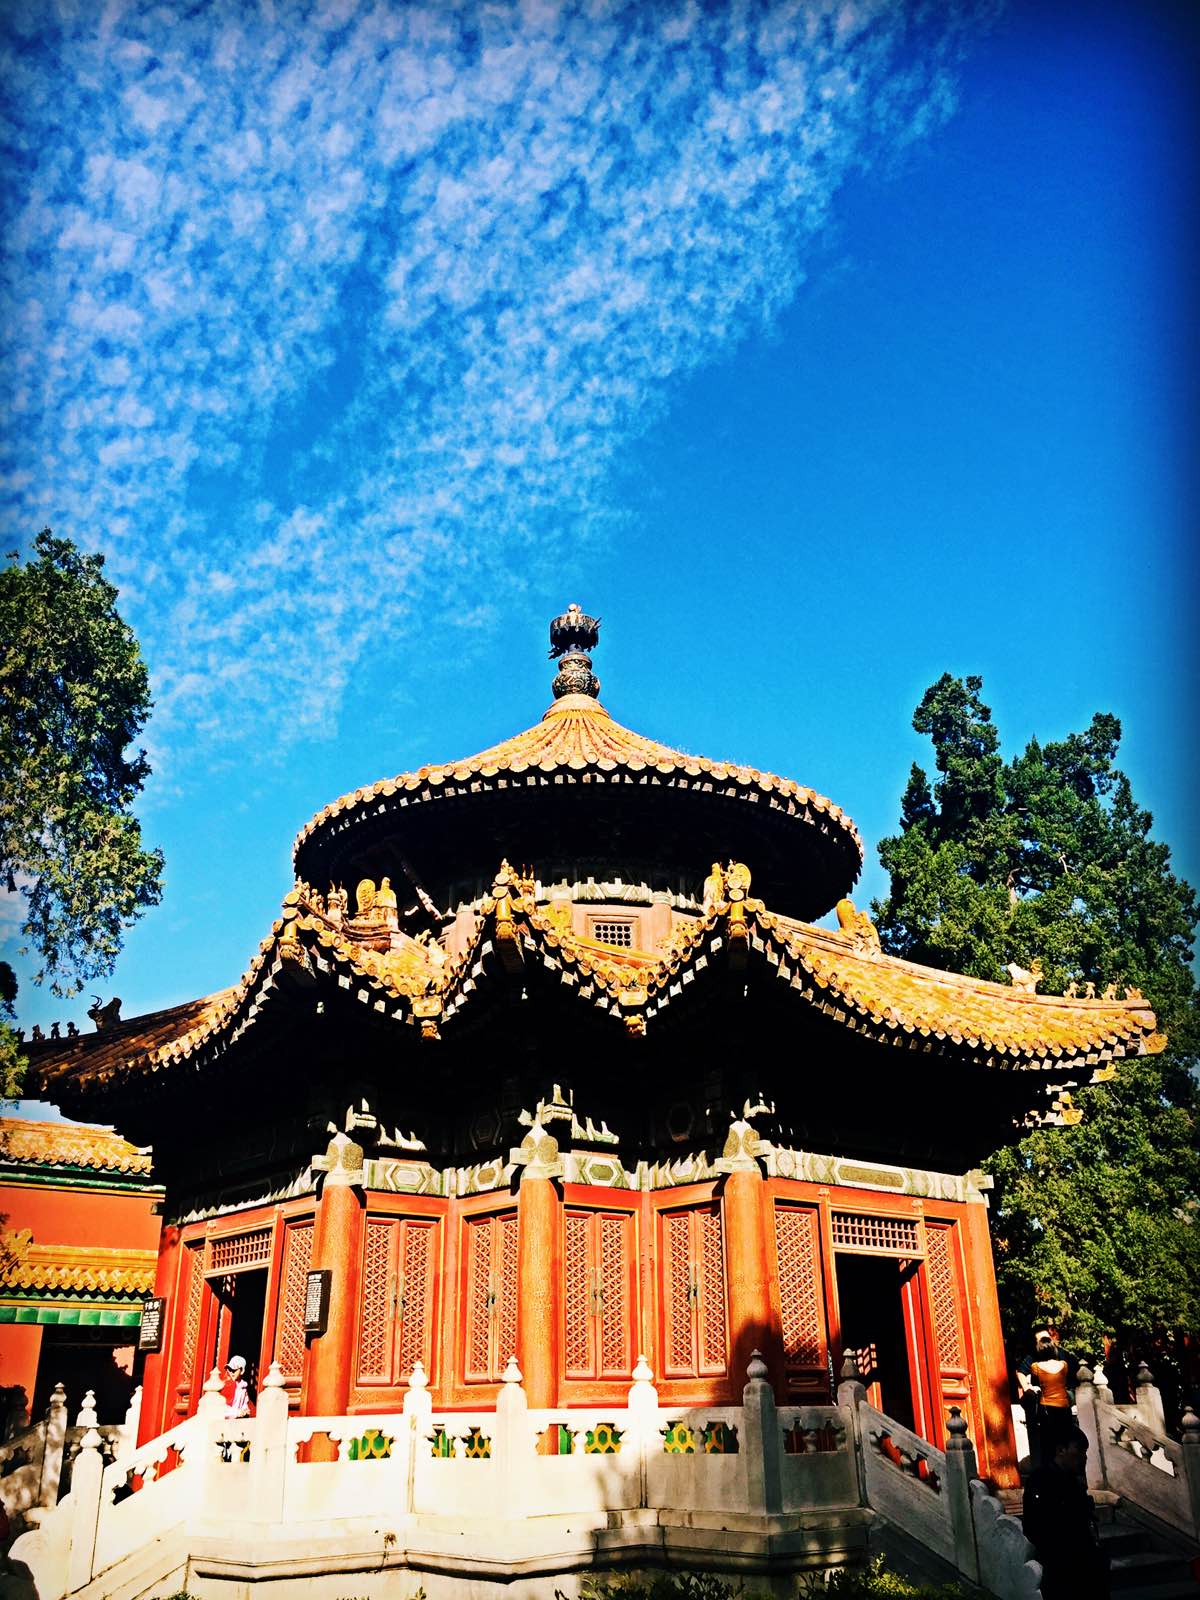 红墙绿瓦蓝天，静静的故宫…      十一的北京天气特别好，秋天的北京